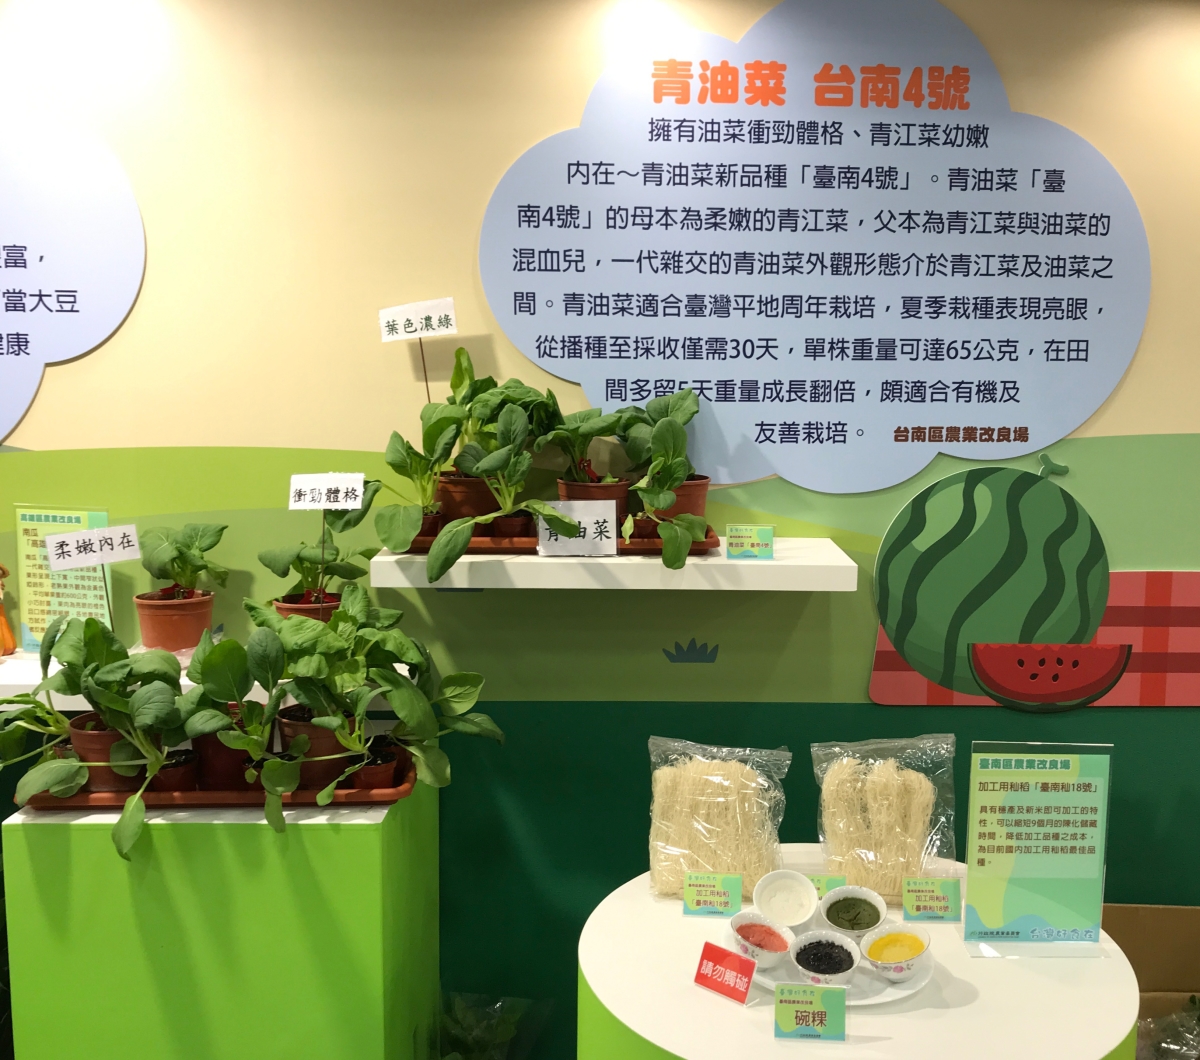 本場展出青油菜「台南4號」及加工用秈稻「臺南秈18號」